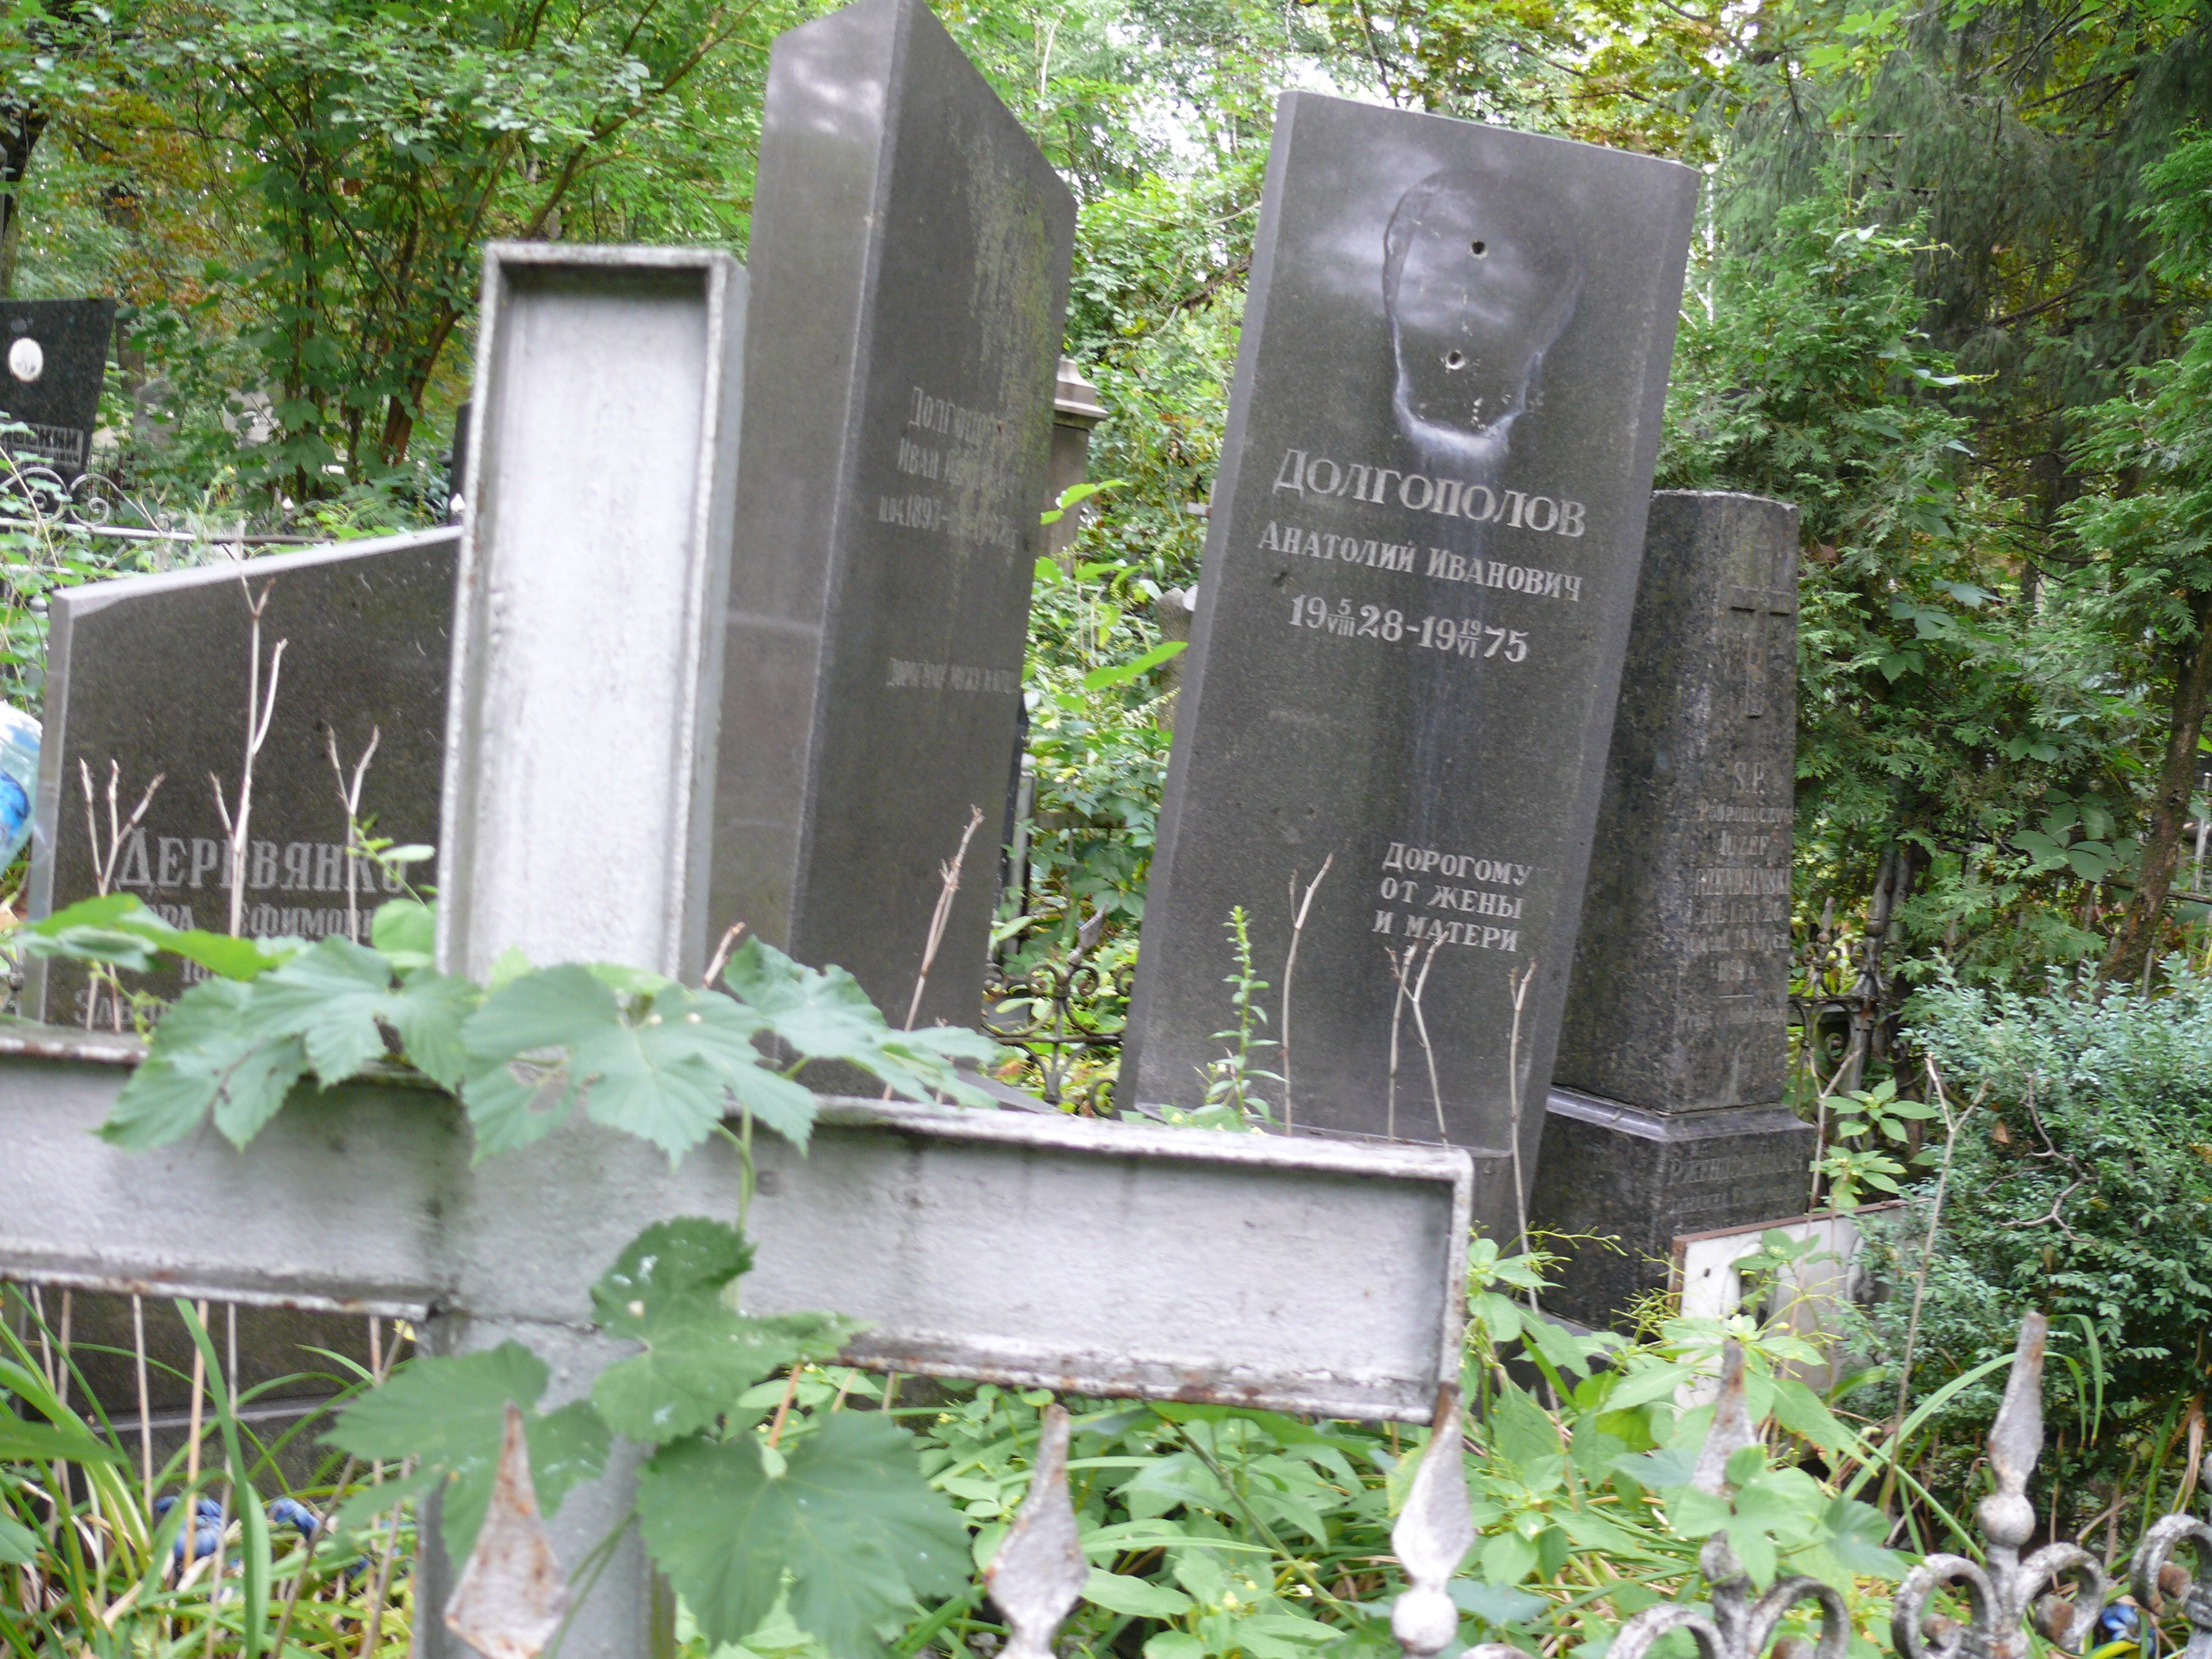 Tombstone of Józef Rżendziński